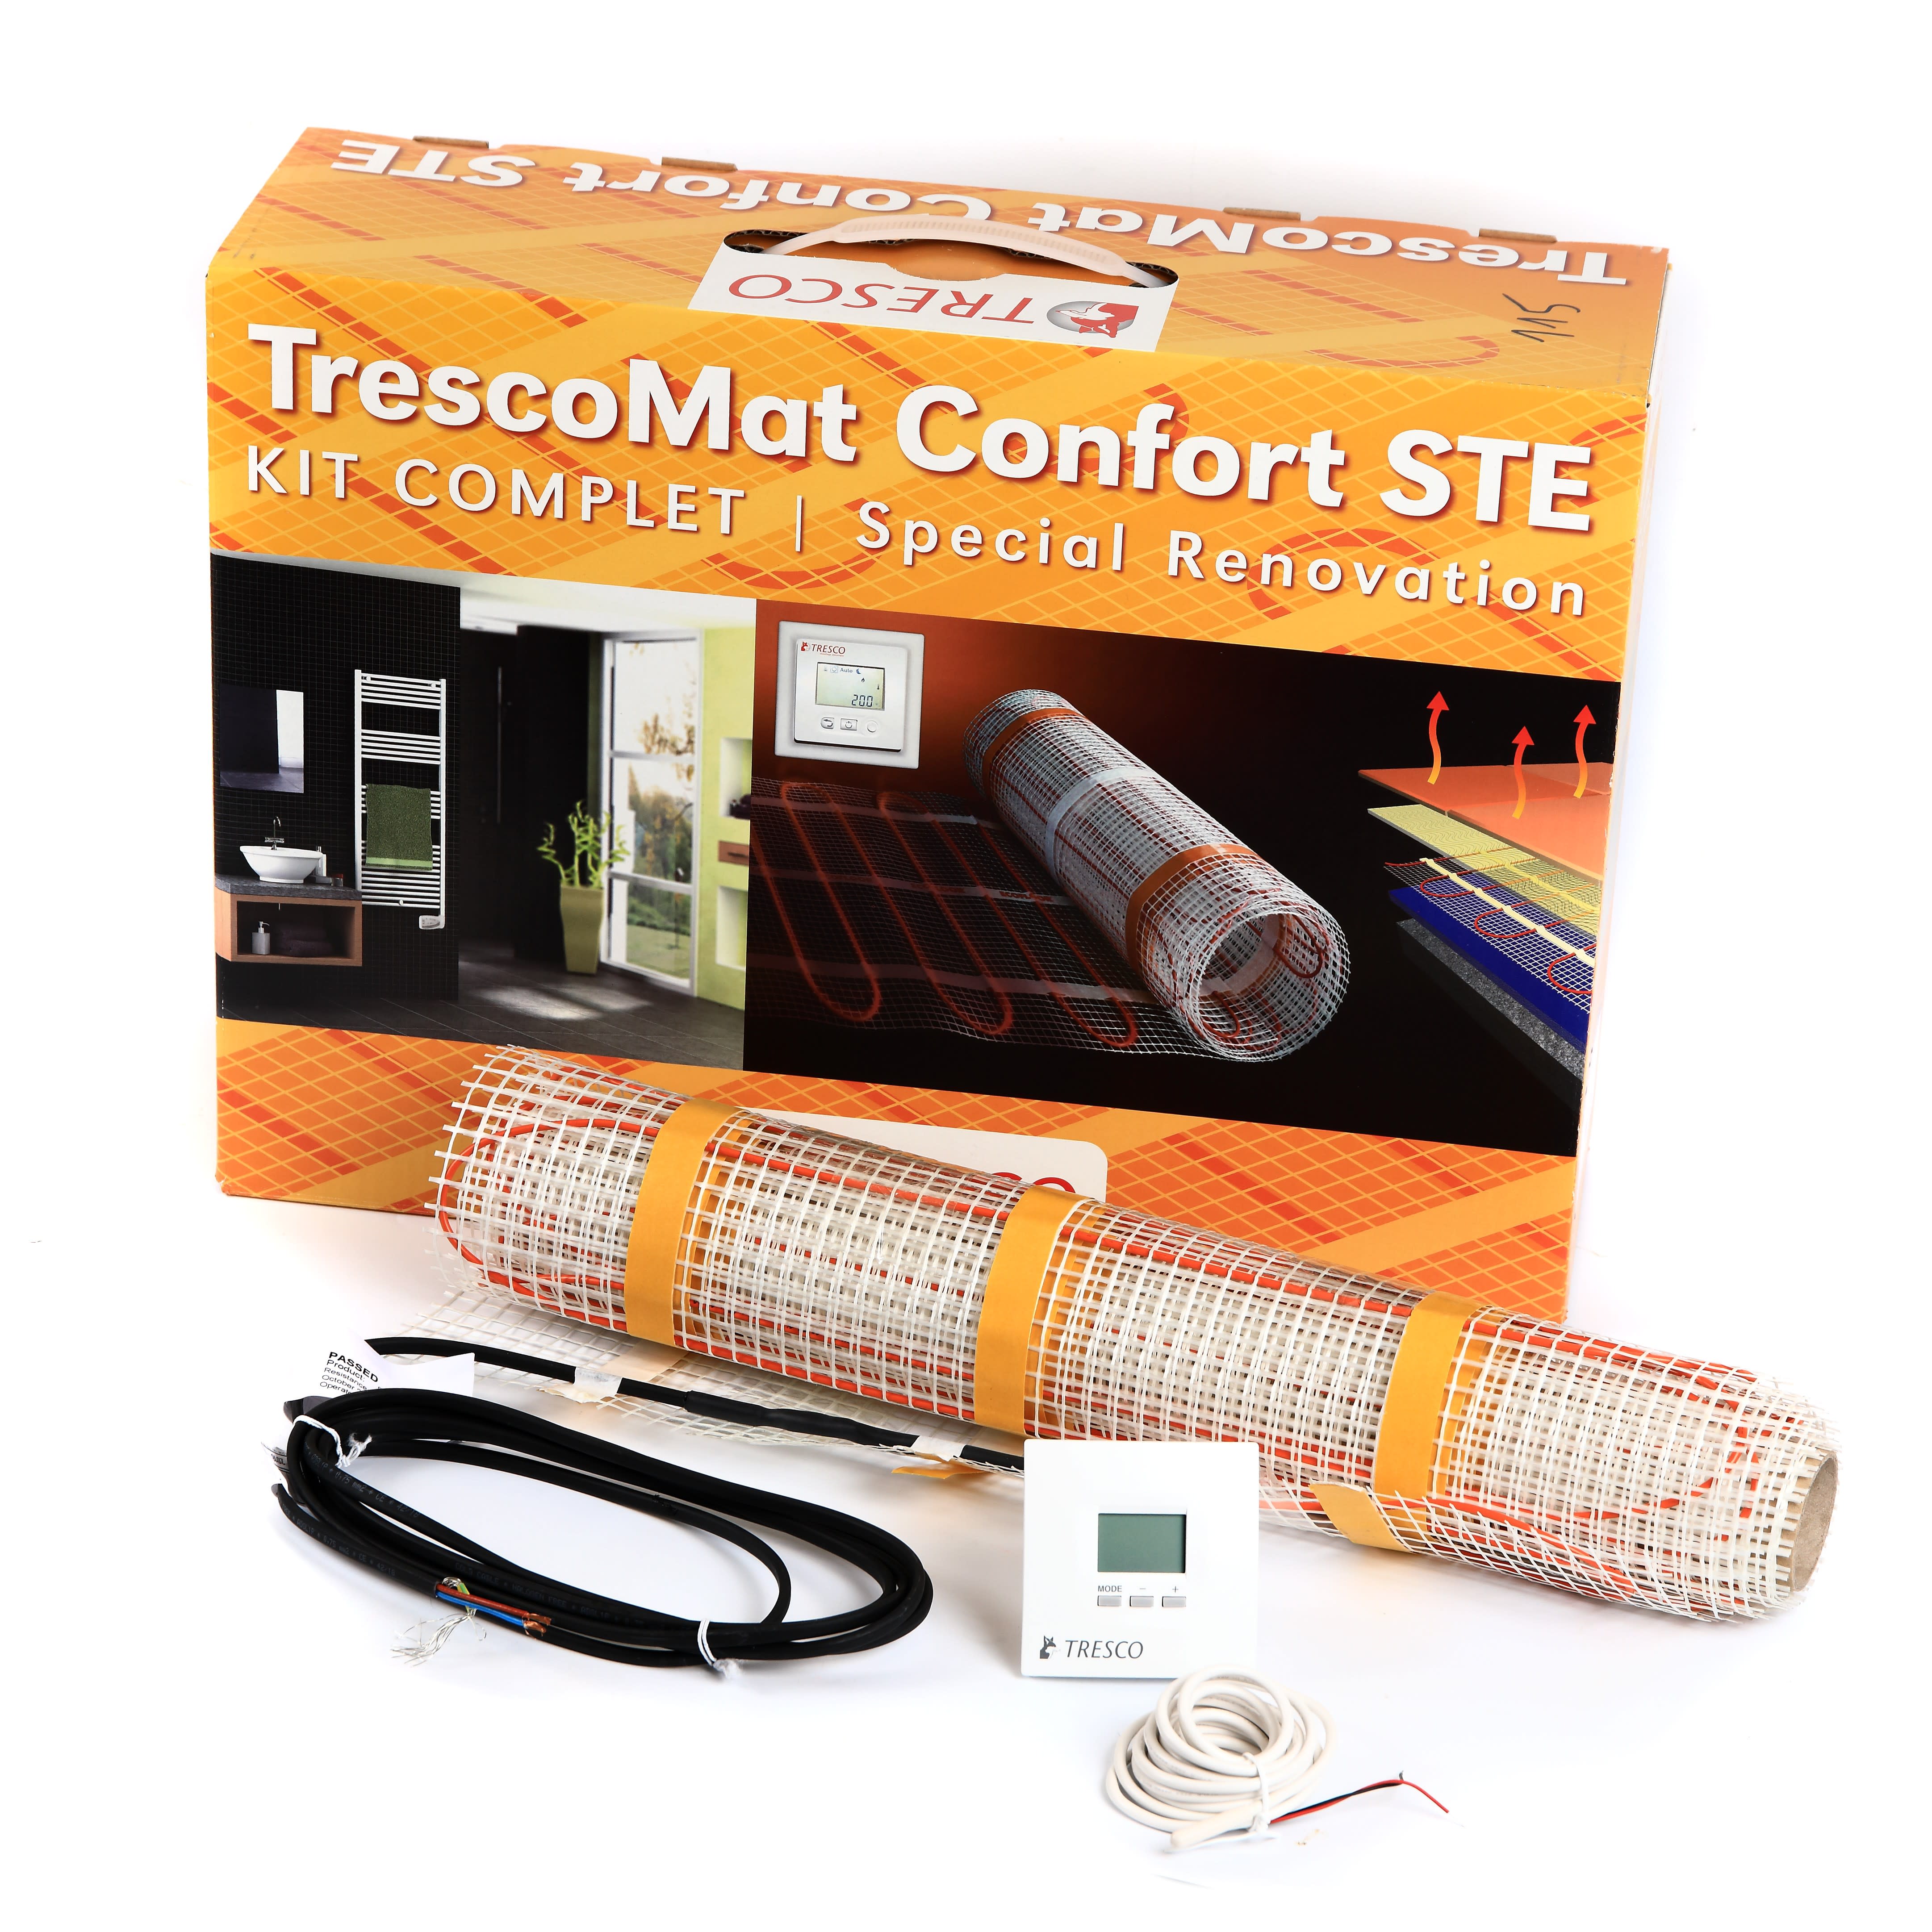 Tresco - Cable chauffant TRESCOMAT CONFORT STE 115 W